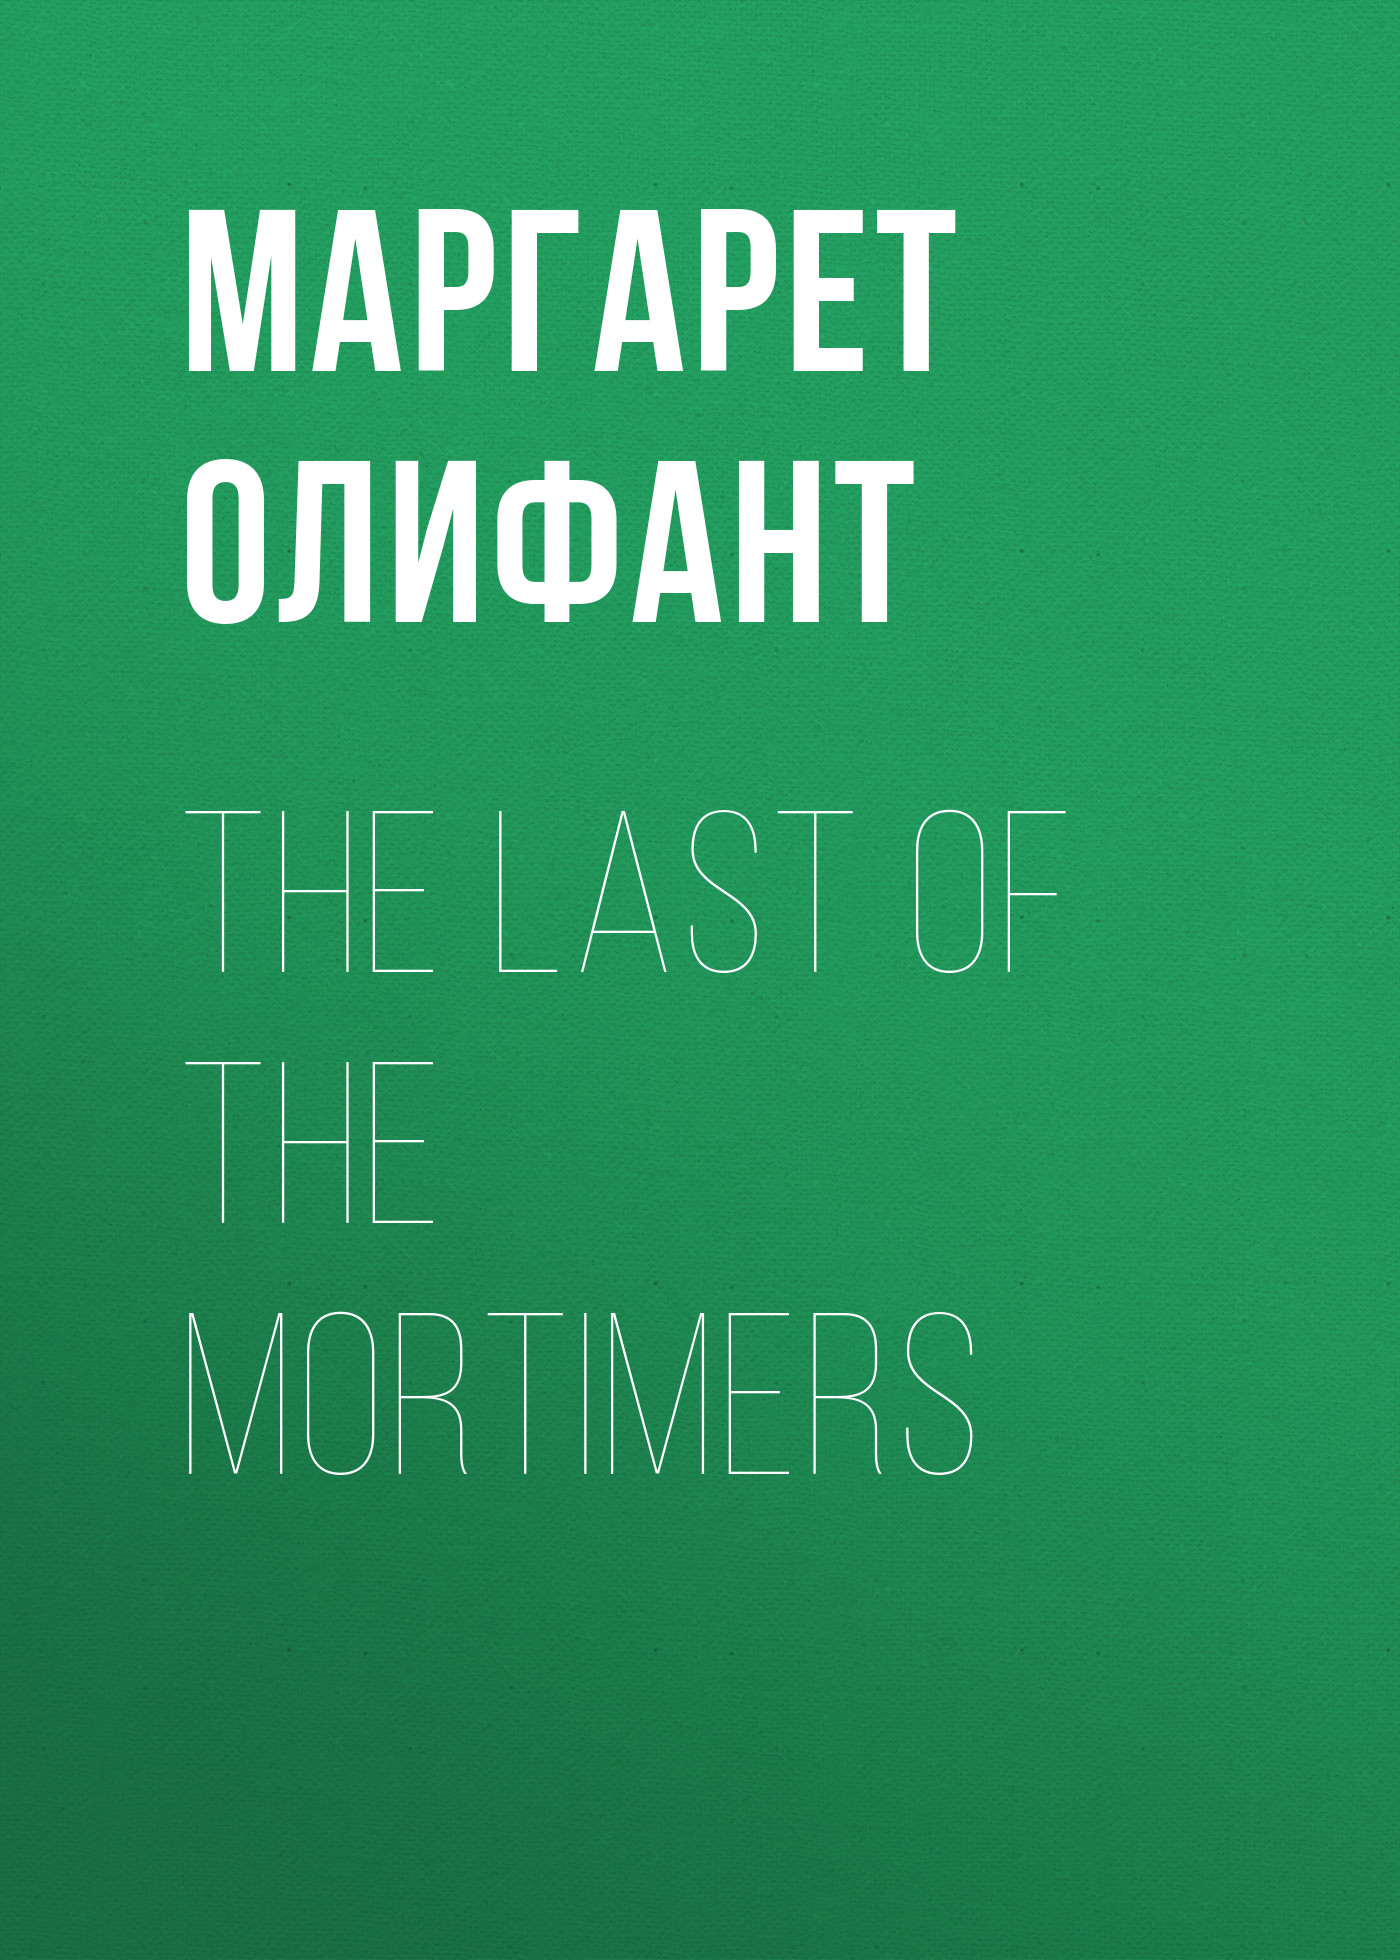 Книга The Last of the Mortimers из серии , созданная Маргарет Олифант, написана в жанре Историческая фантастика, Исторические приключения. Стоимость электронной книги The Last of the Mortimers с идентификатором 34843342 составляет 0 руб.